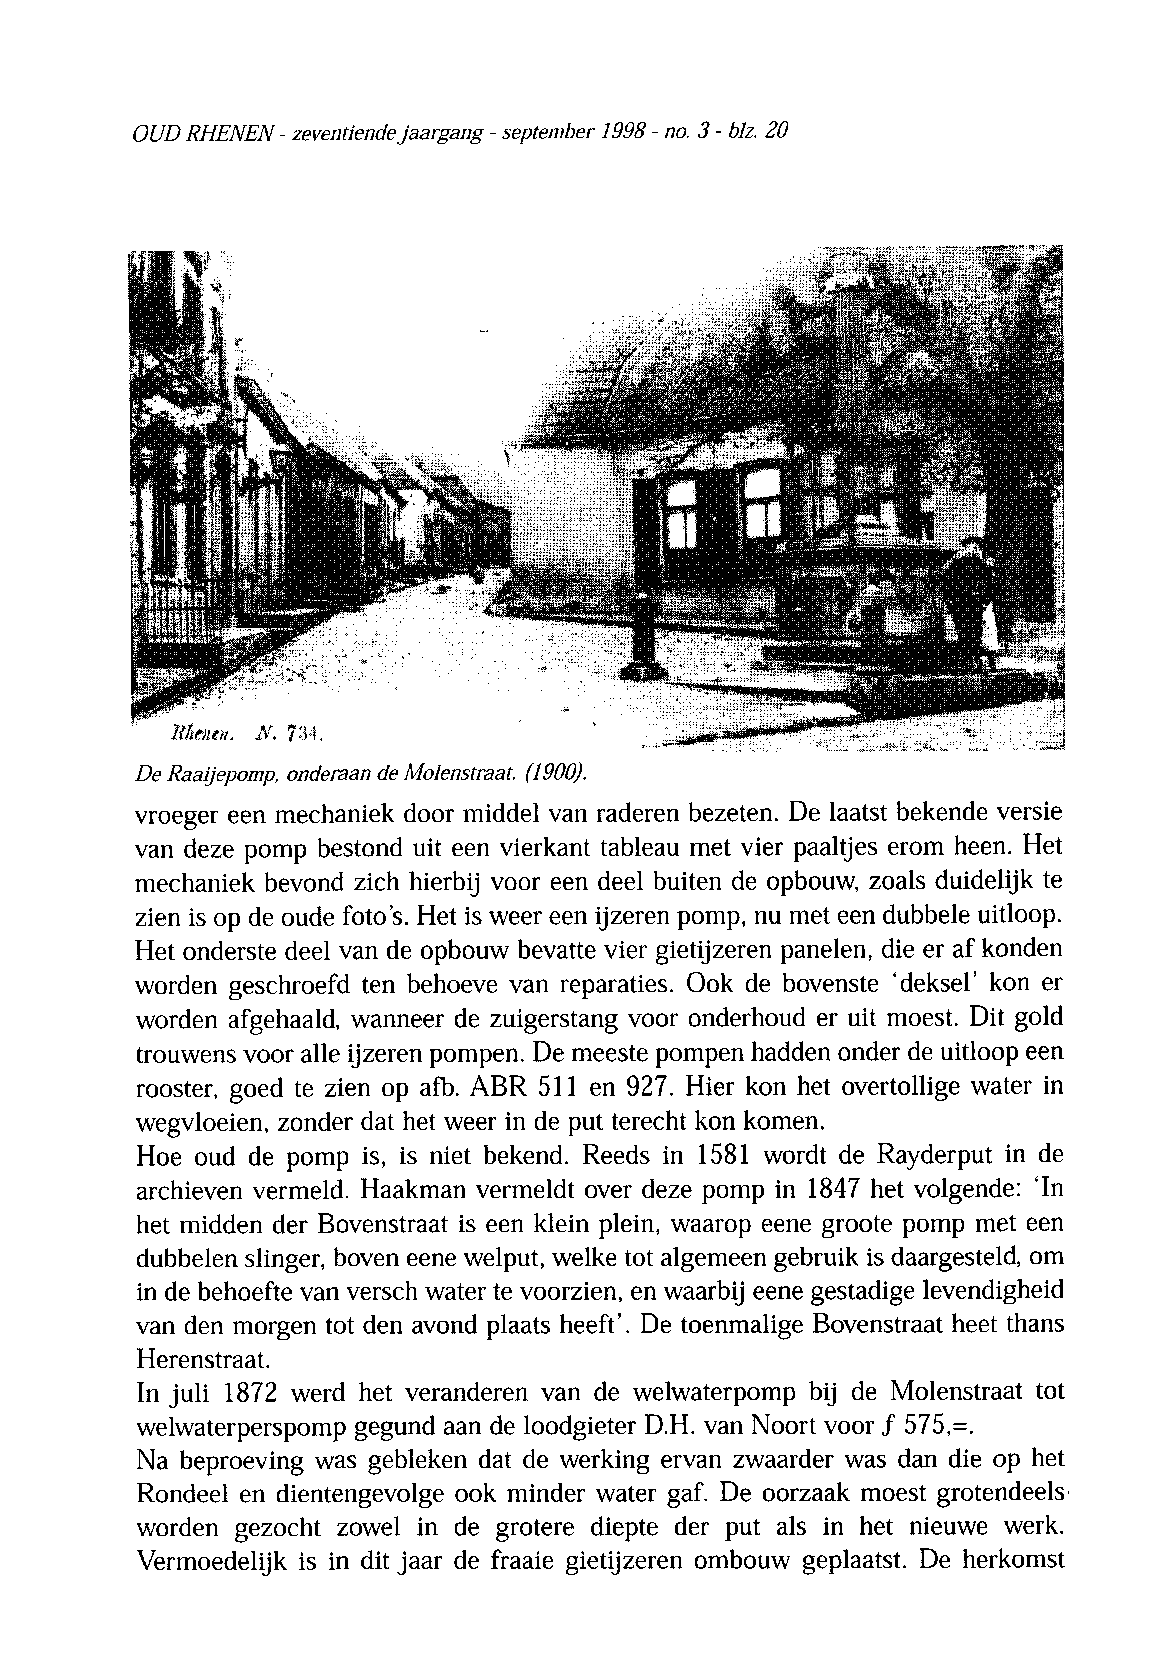 OUD RHENEN - zeventiende jaargang - september 1998 - no. 3 - bh. 20 De Raaijepomp, onderaan de Molenstraat. (1900). vroeger een mechaniek door middel van raderen bezeten.